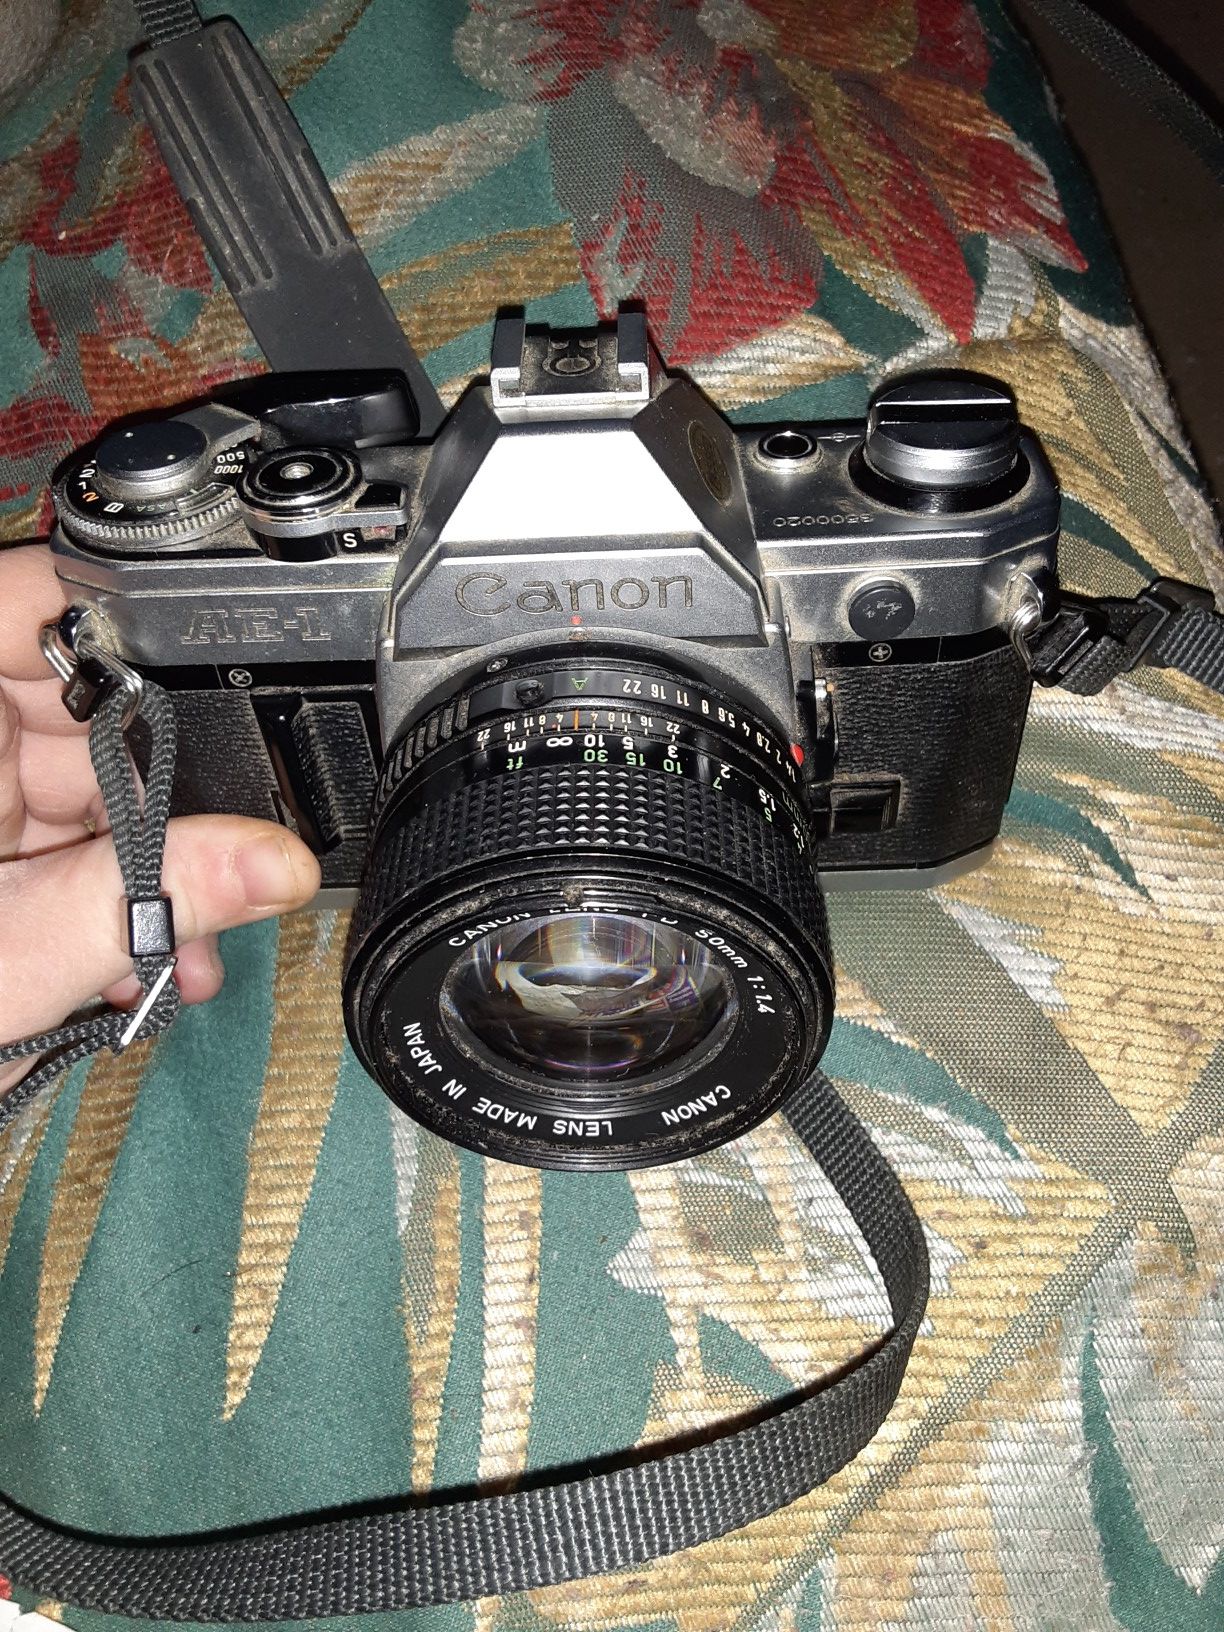 Canon ae-1 camera